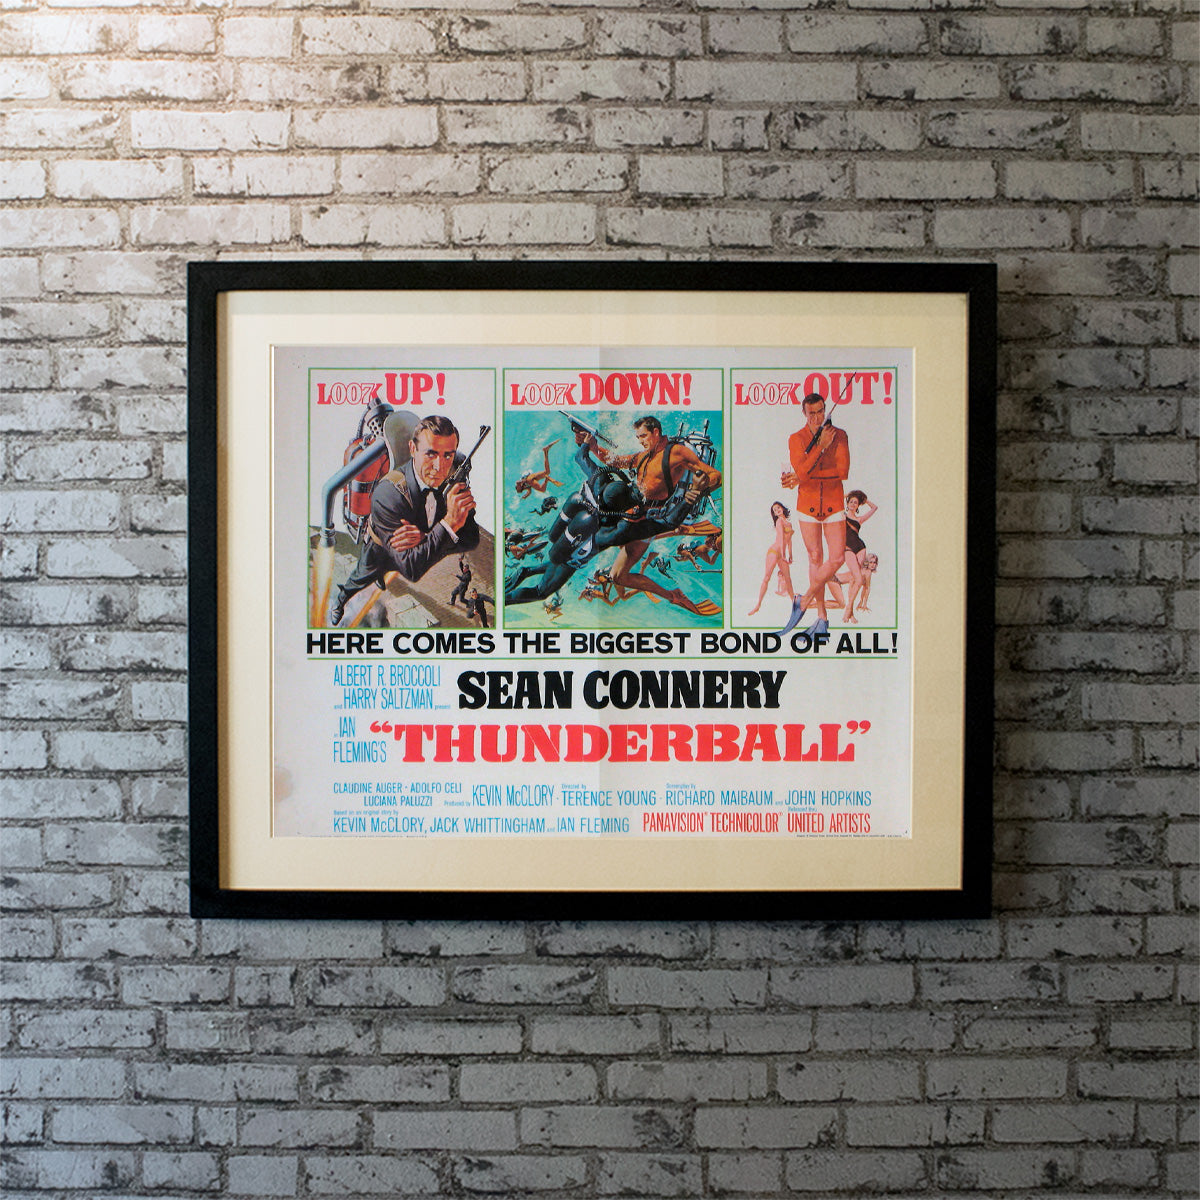 Thunderball (1965)